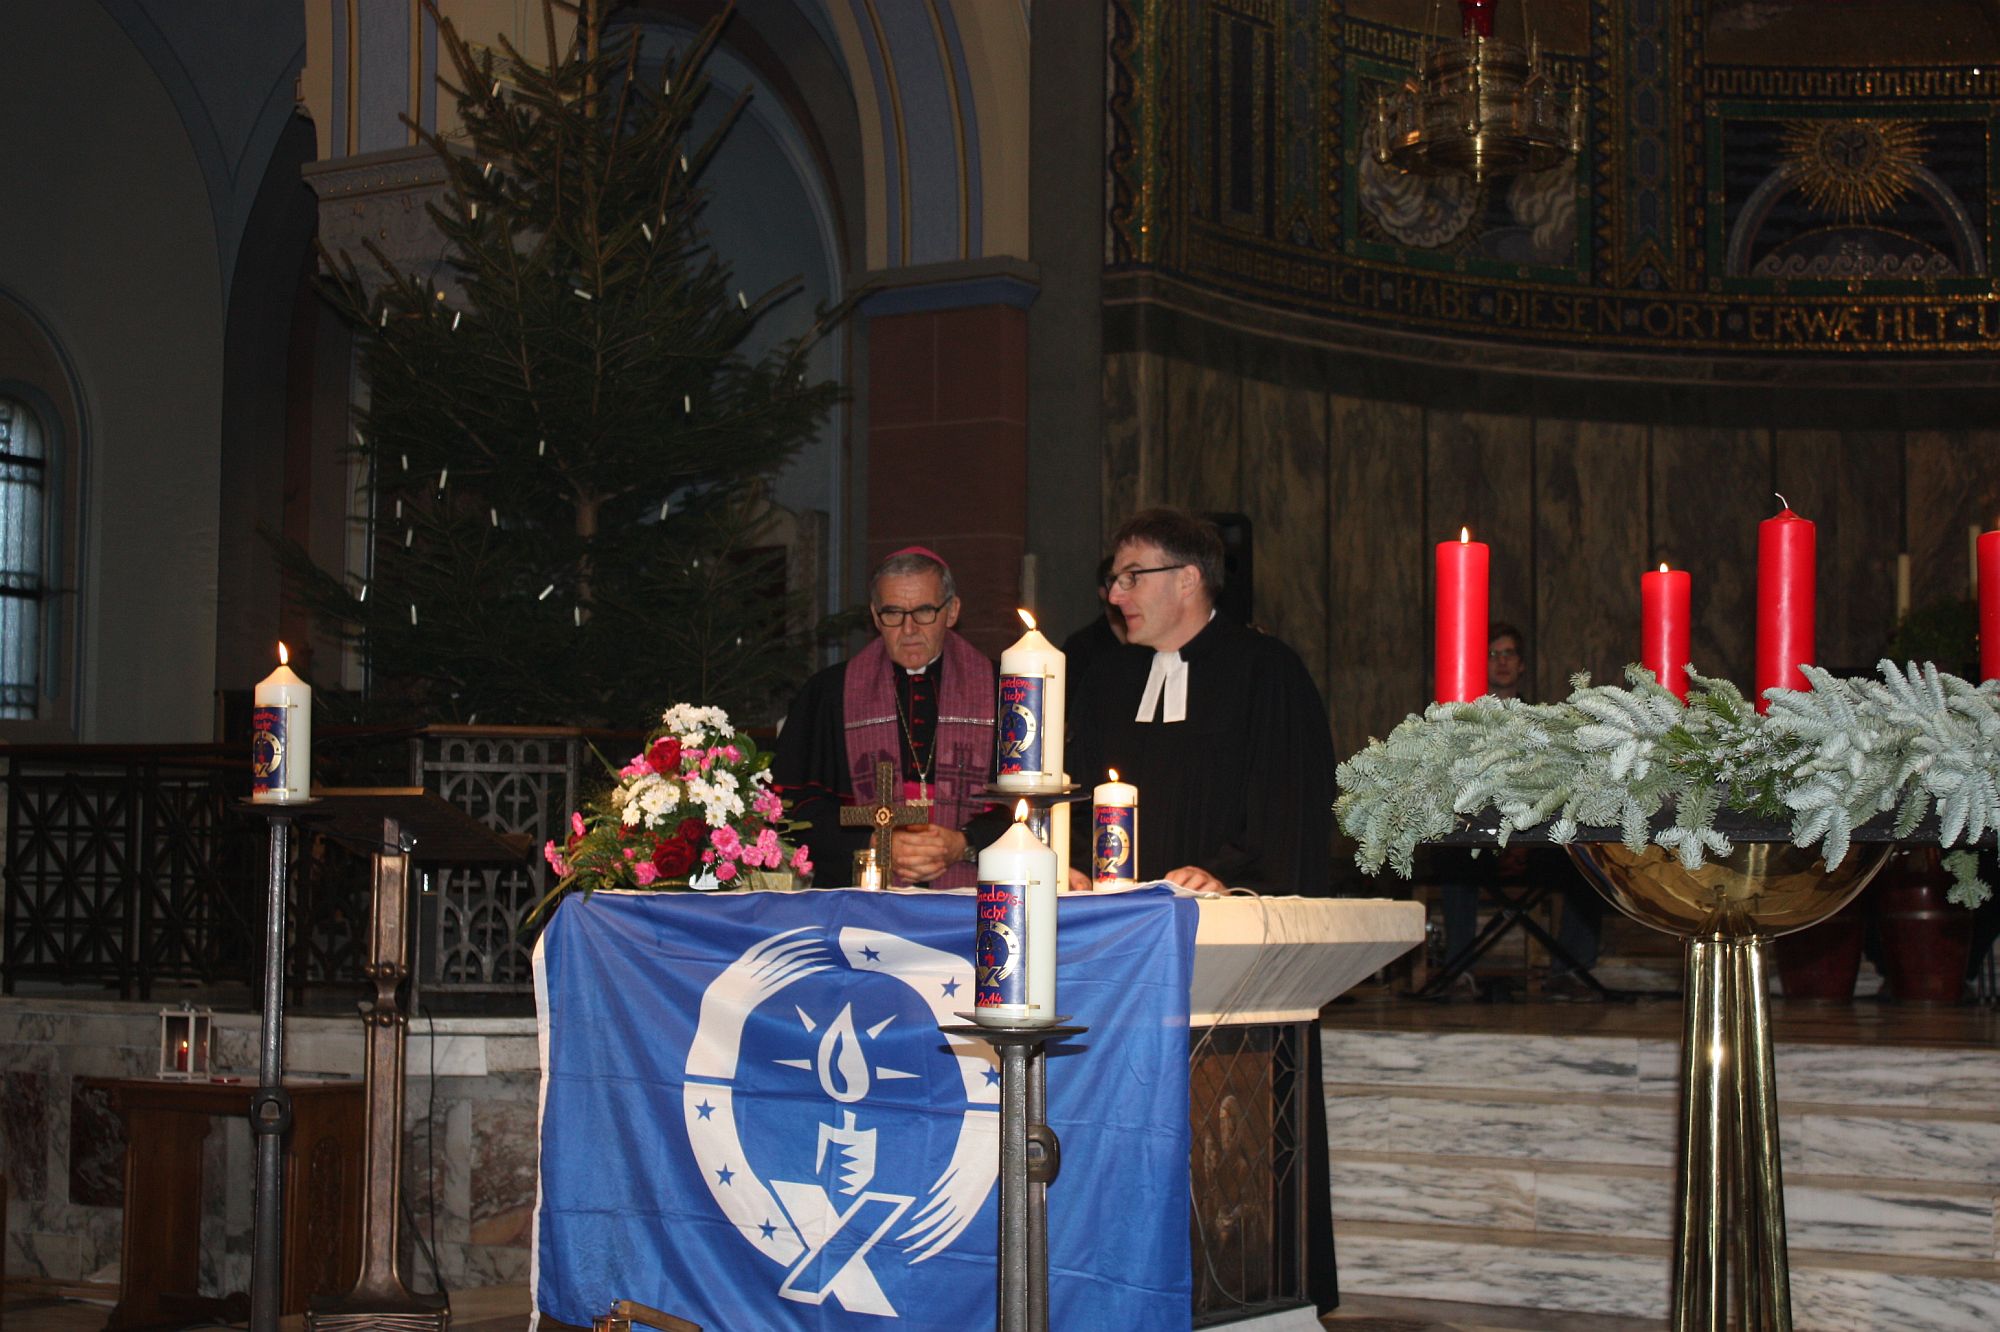 Bischof Bündgen und Pfarrer Obrikat beim Schlusssegen (c) DPSG Aachen